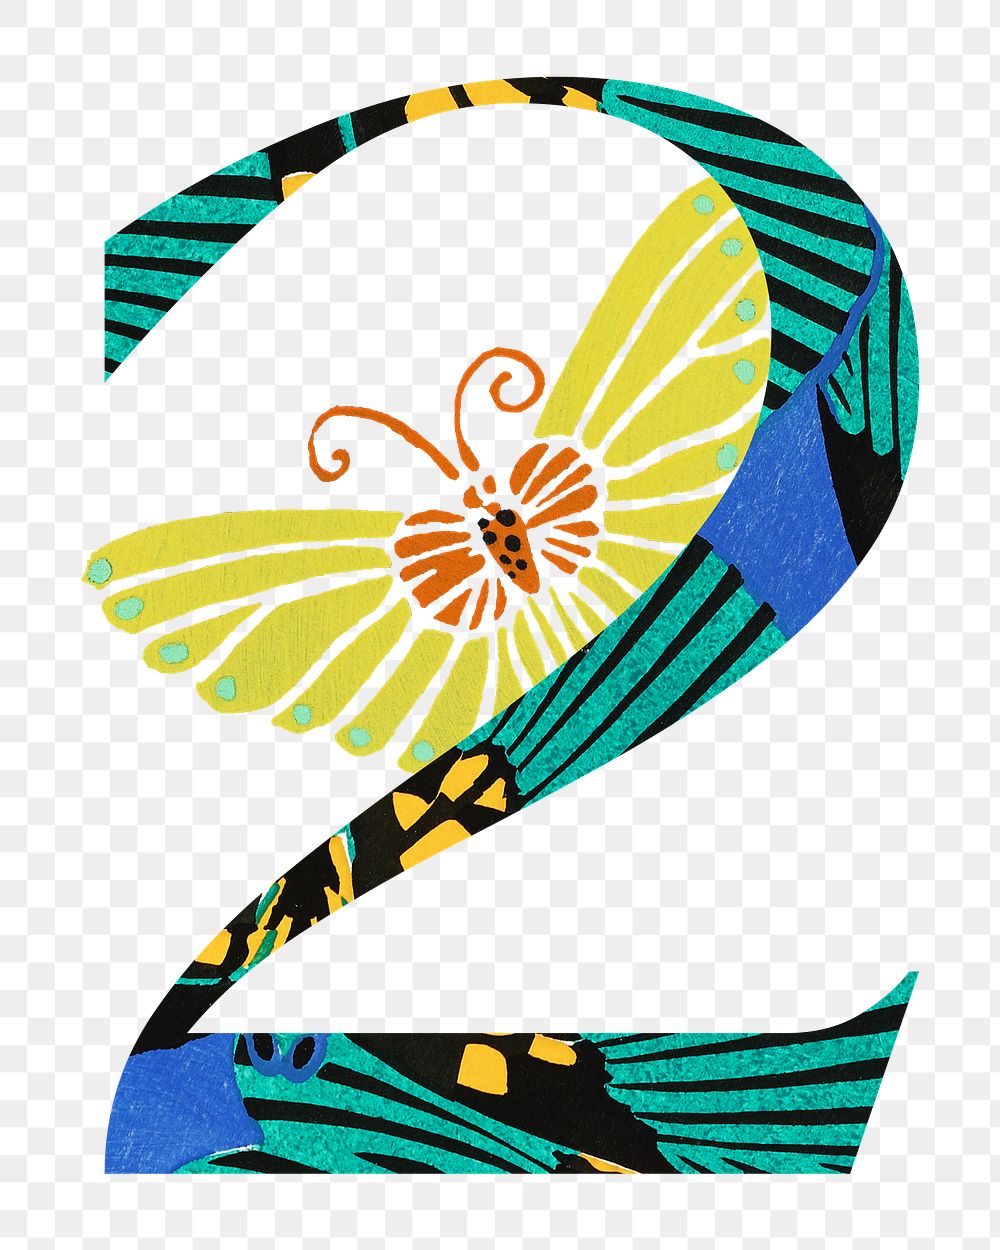 Number 2 png Seguy Papillons art illustration, transparent background